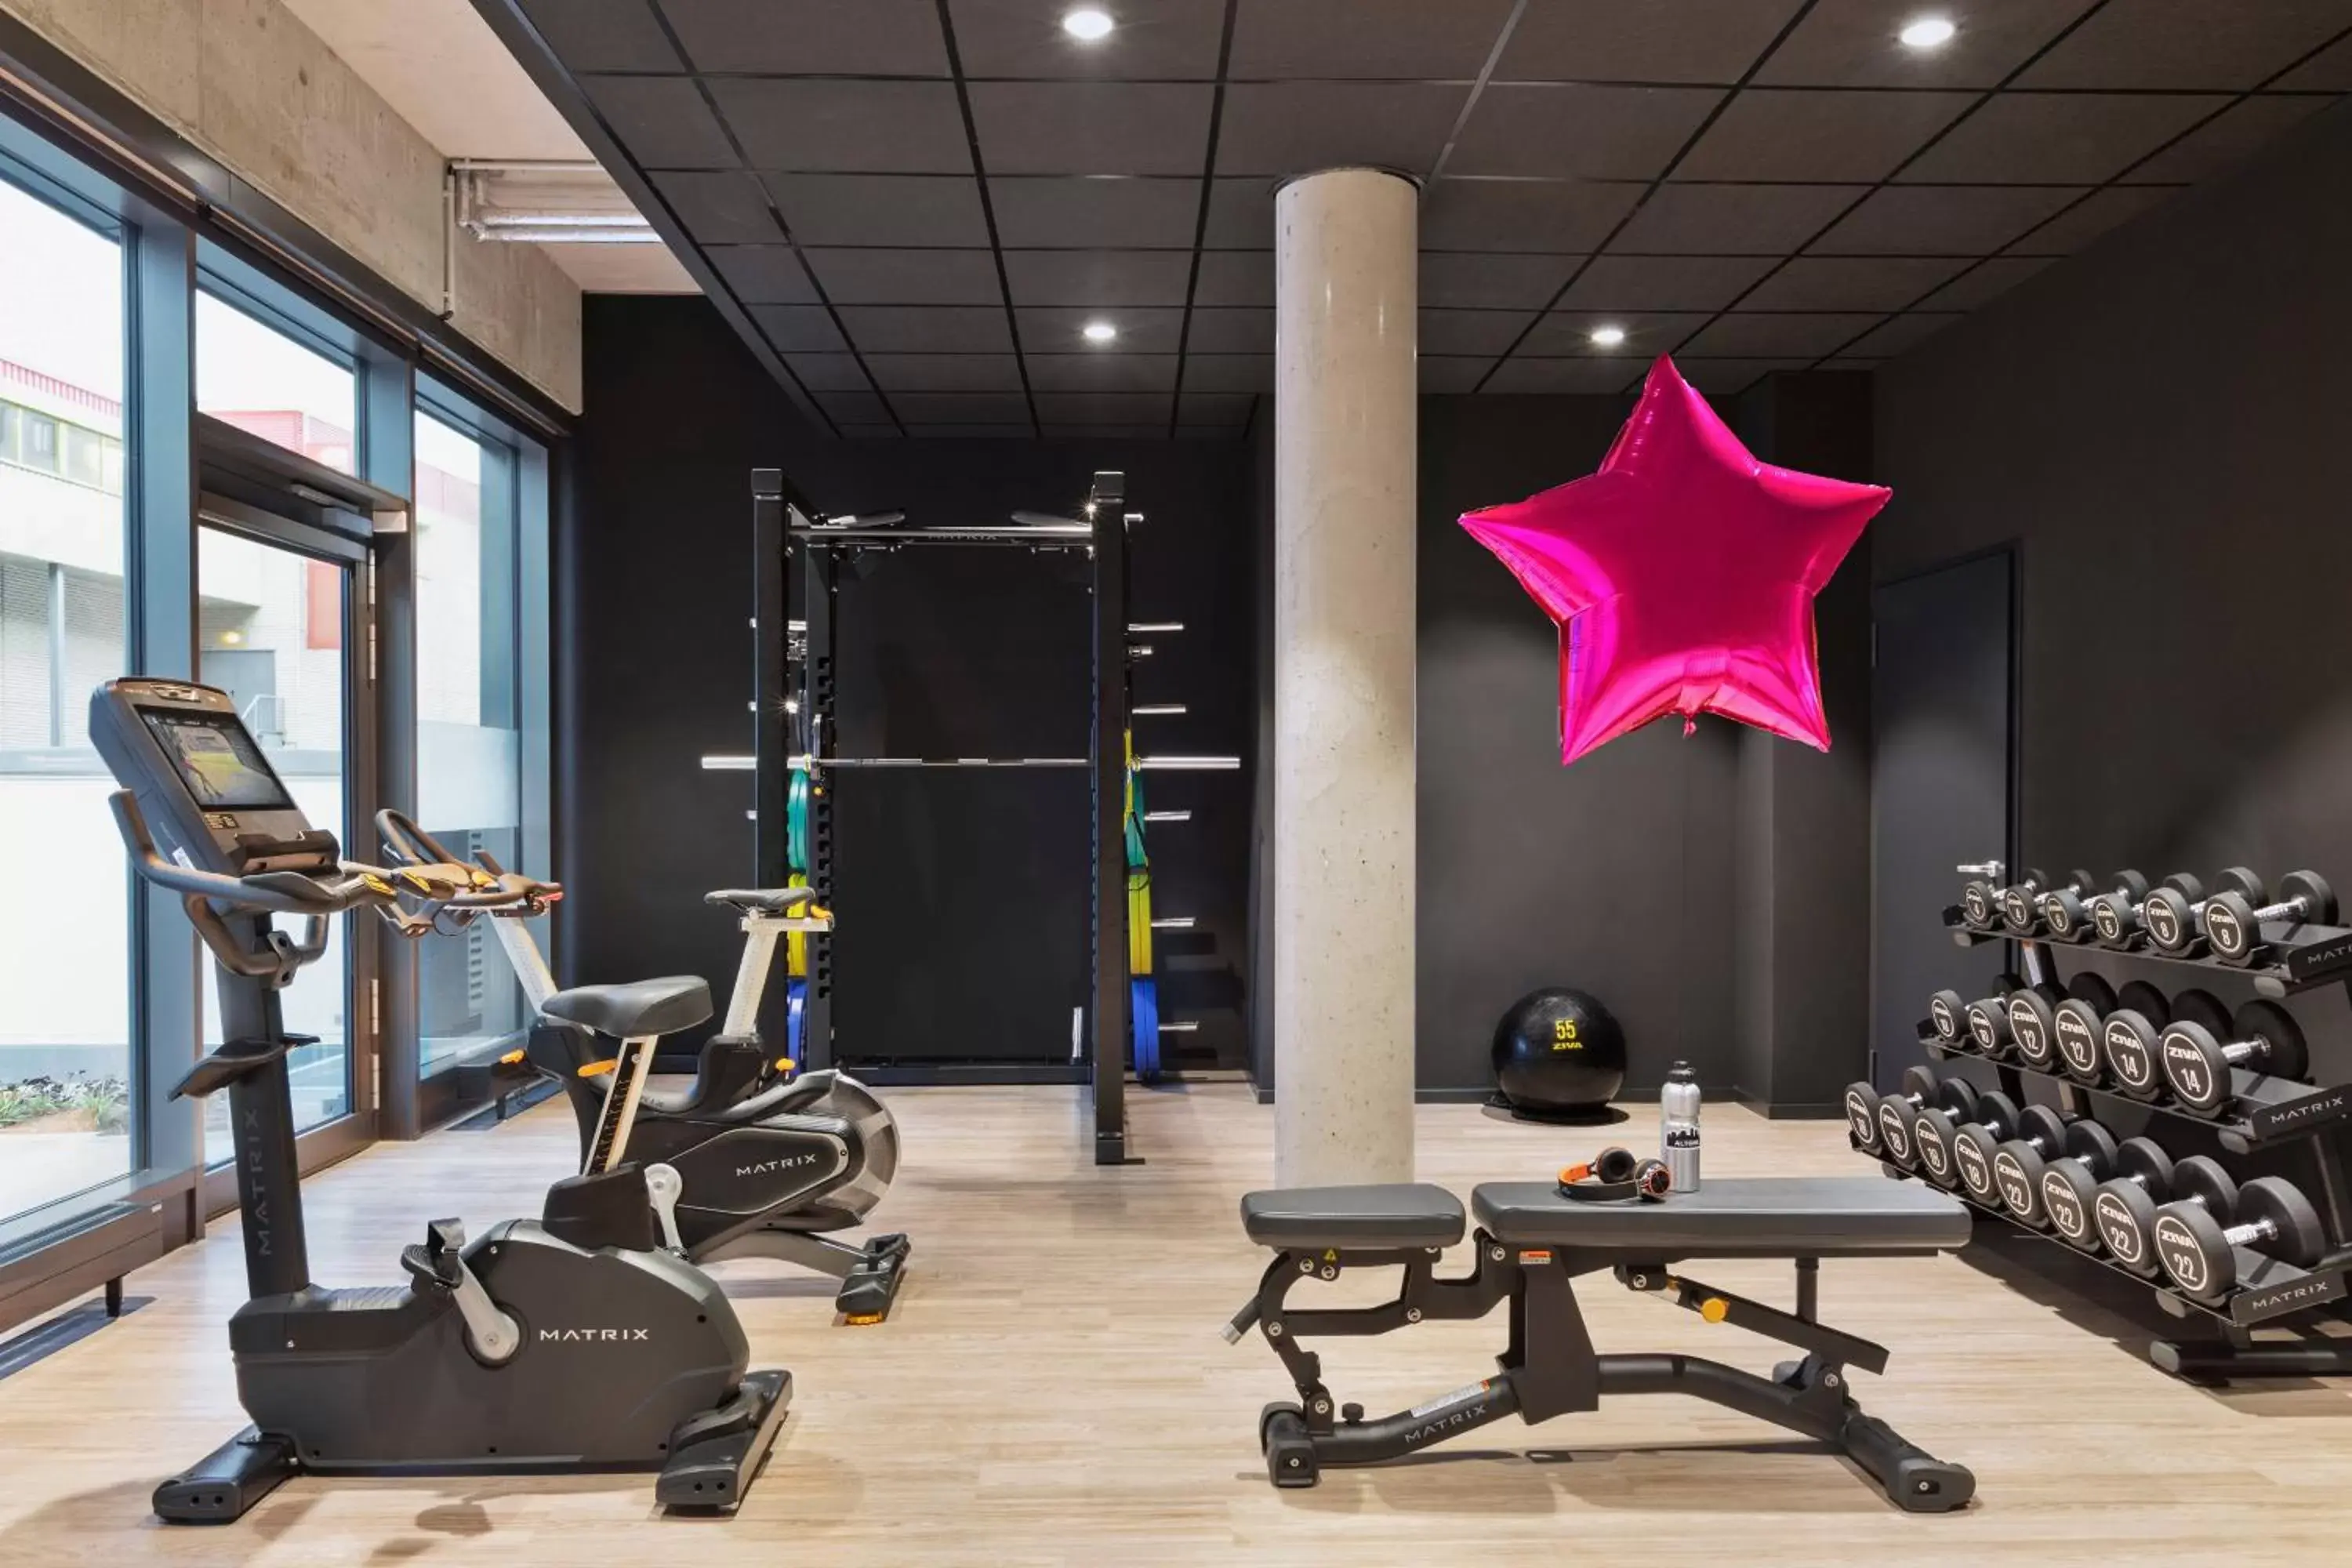 Fitness centre/facilities, Fitness Center/Facilities in Moxy Hamburg Altona